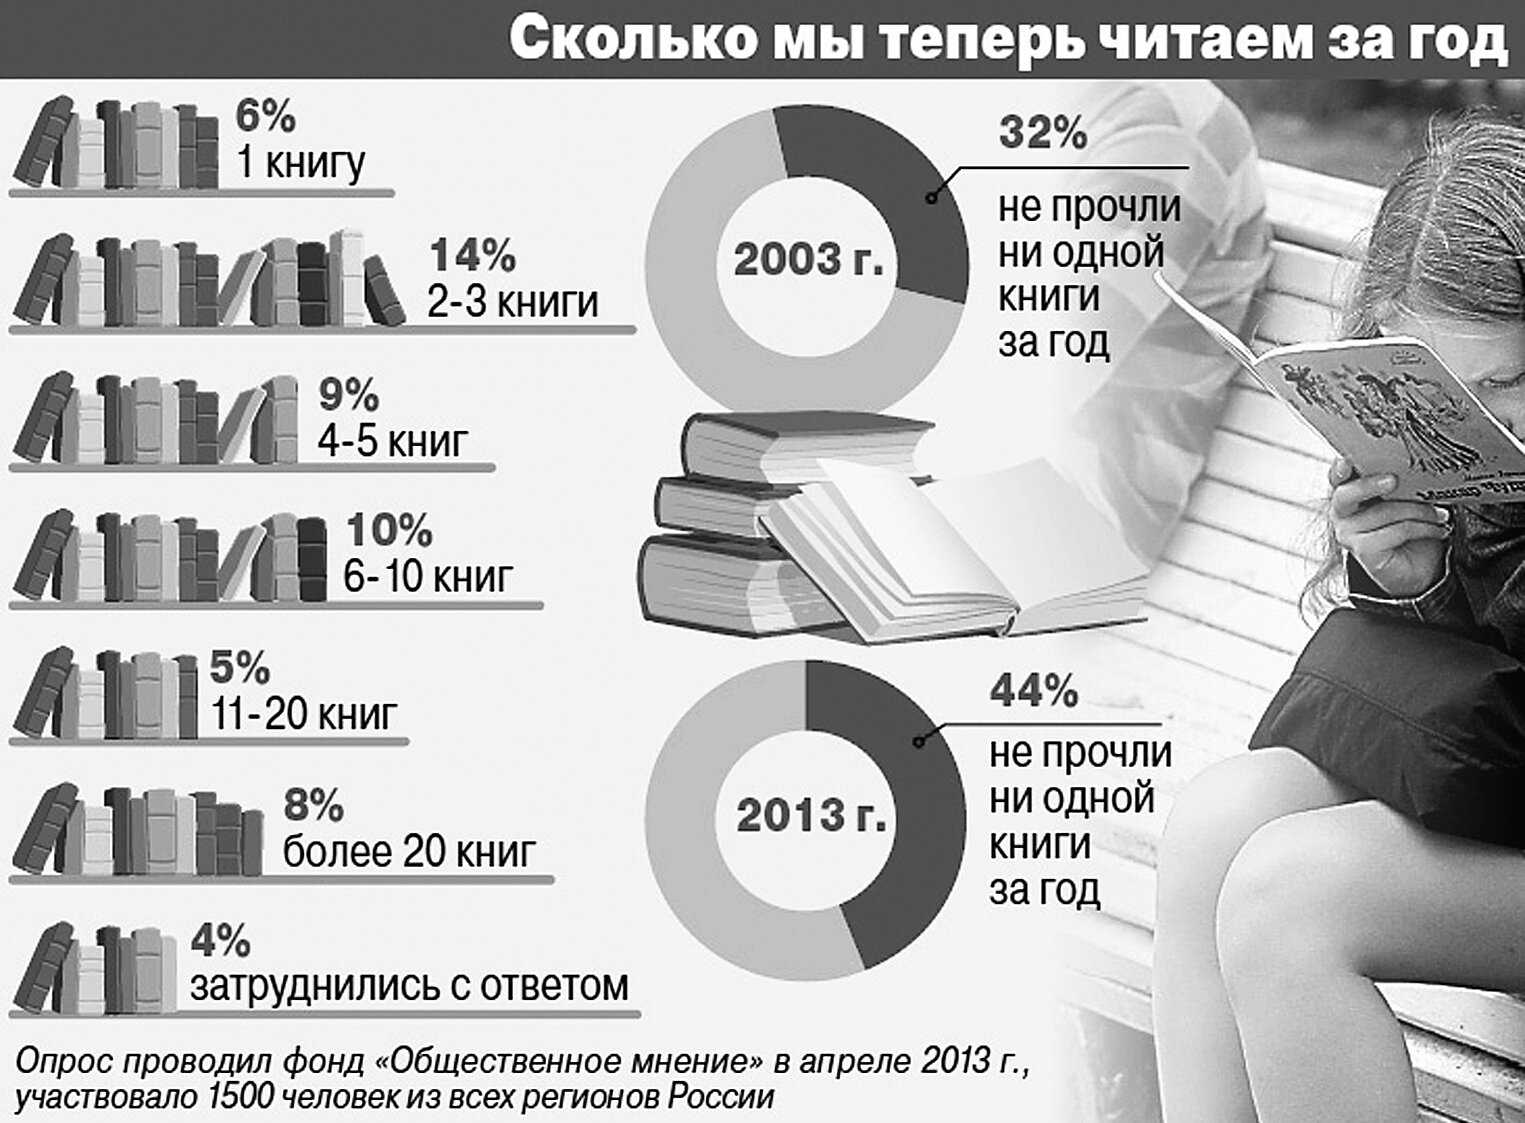 Сколько страниц нужно прочитать. Статистика чтения книг. Процент людей читающих книги. Сколько людей читают книги. Сколько книг читать в год.